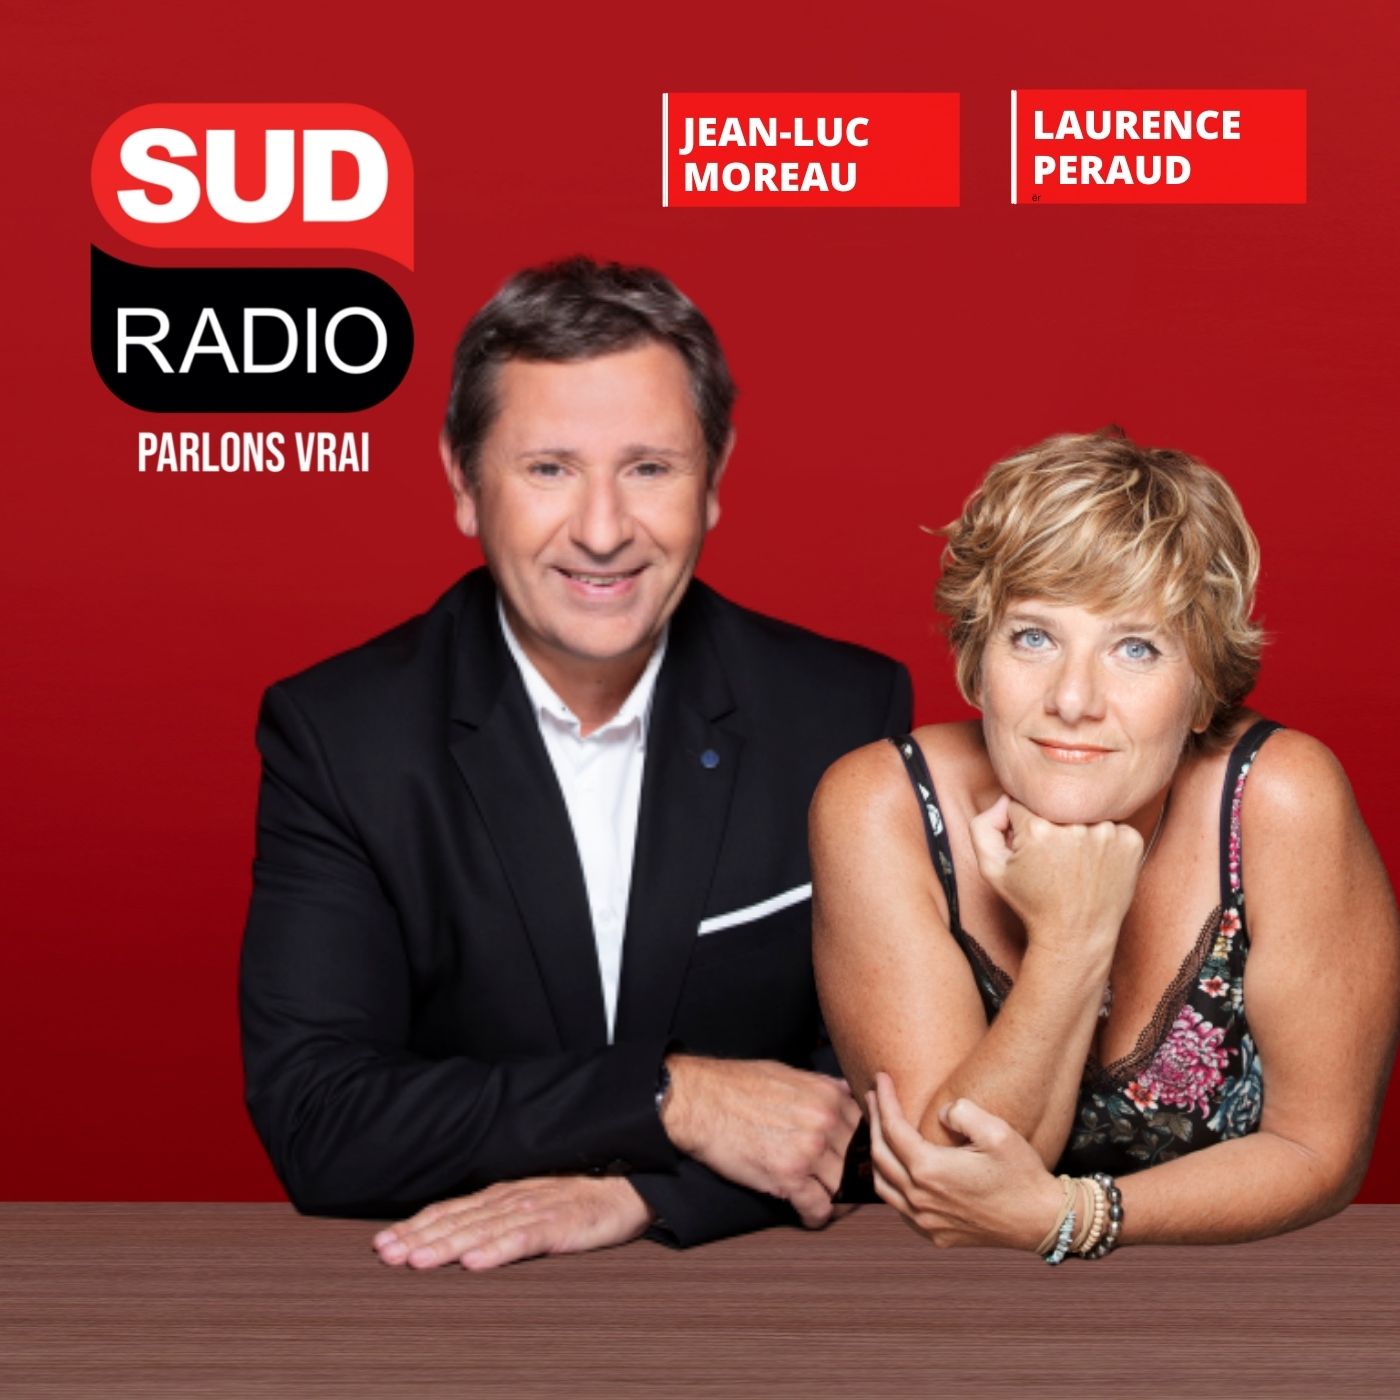 www.sudradio.fr